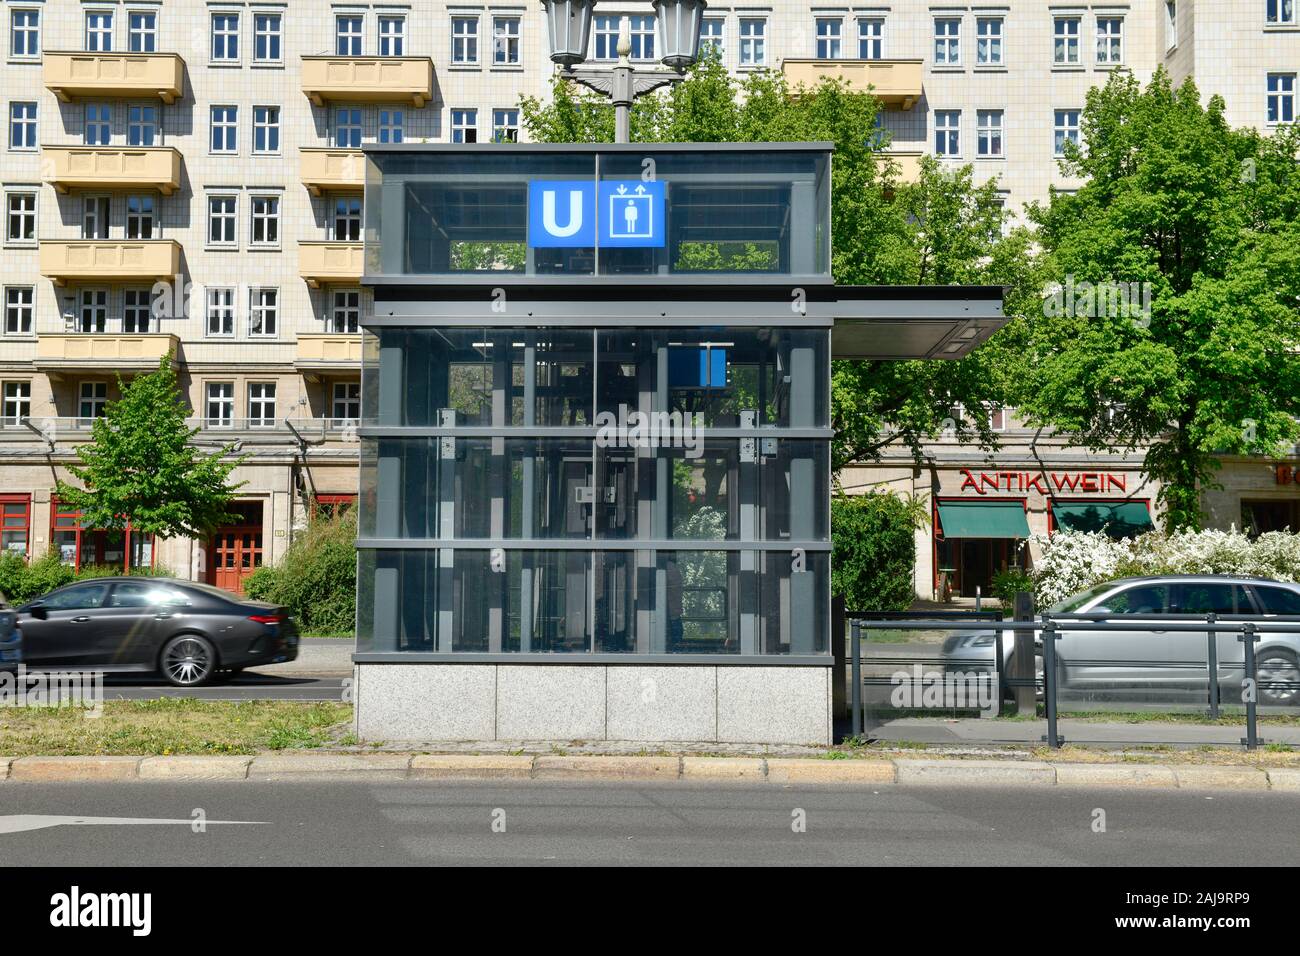 U-Bahn Aufzug, la Karl-Marx-Allee, Friedrichshain, Berlin, Deutschland Banque D'Images